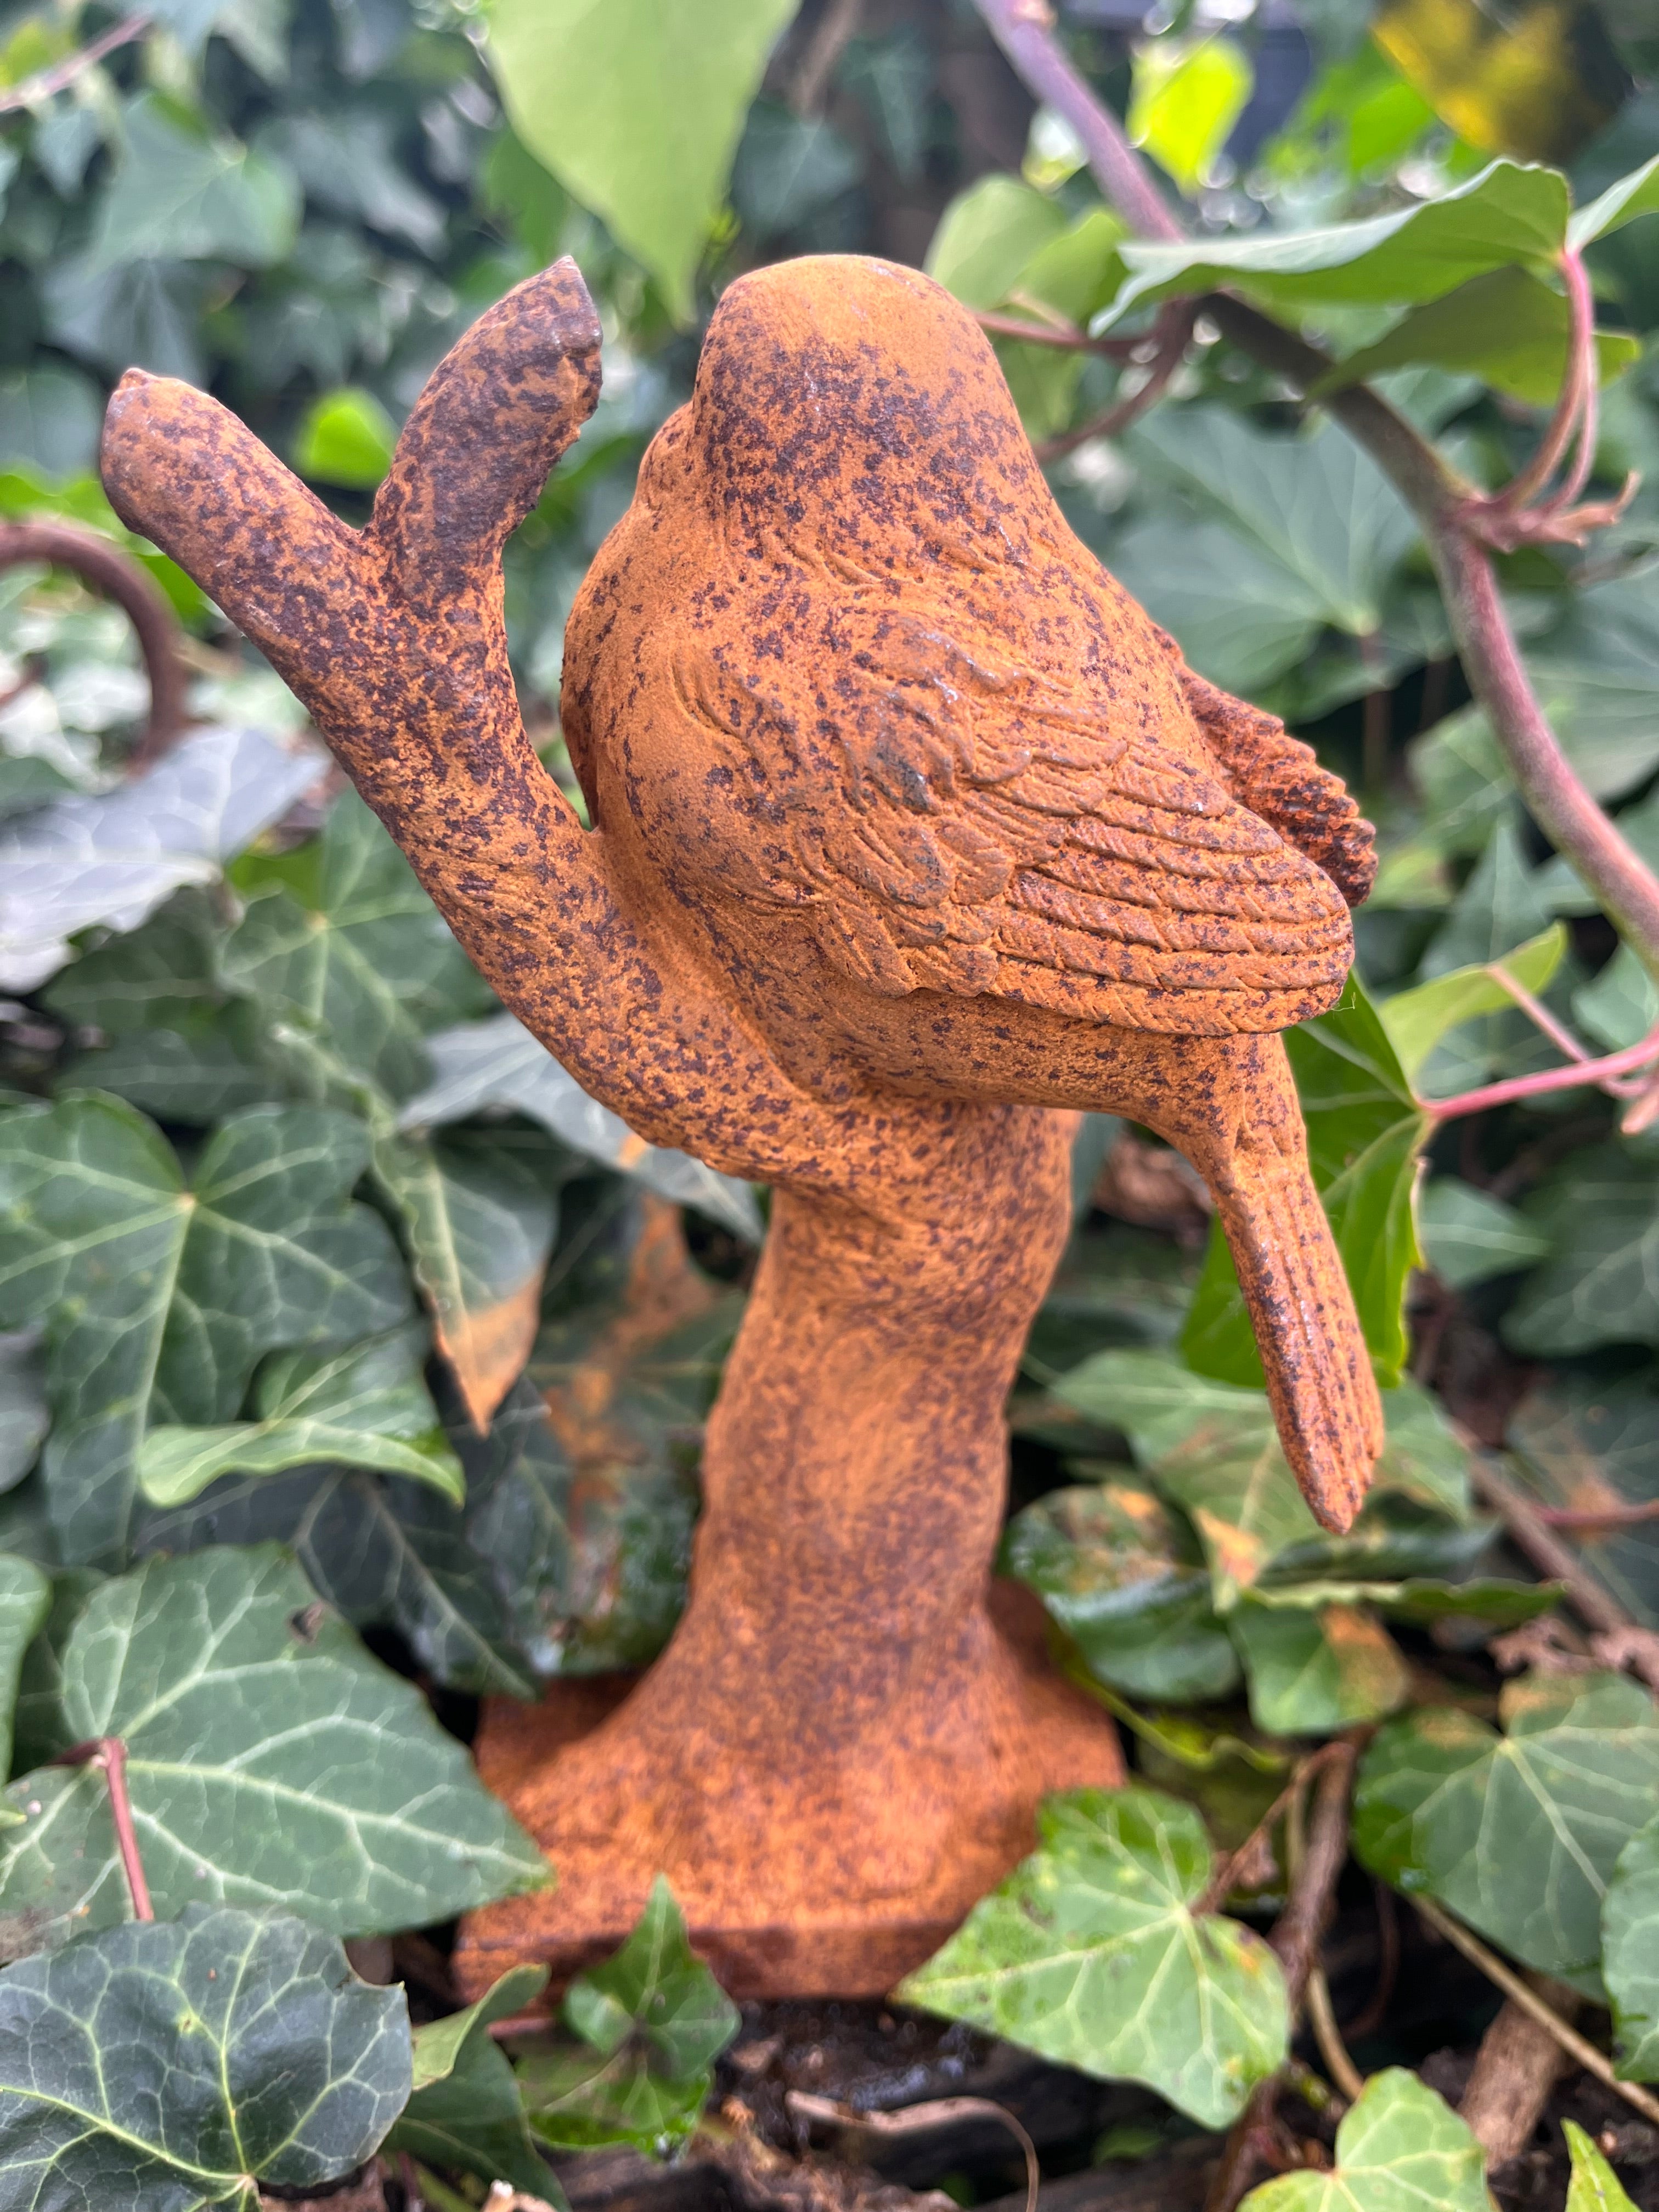 Vogel op stok van gietijzer - Brocante bij Ingie